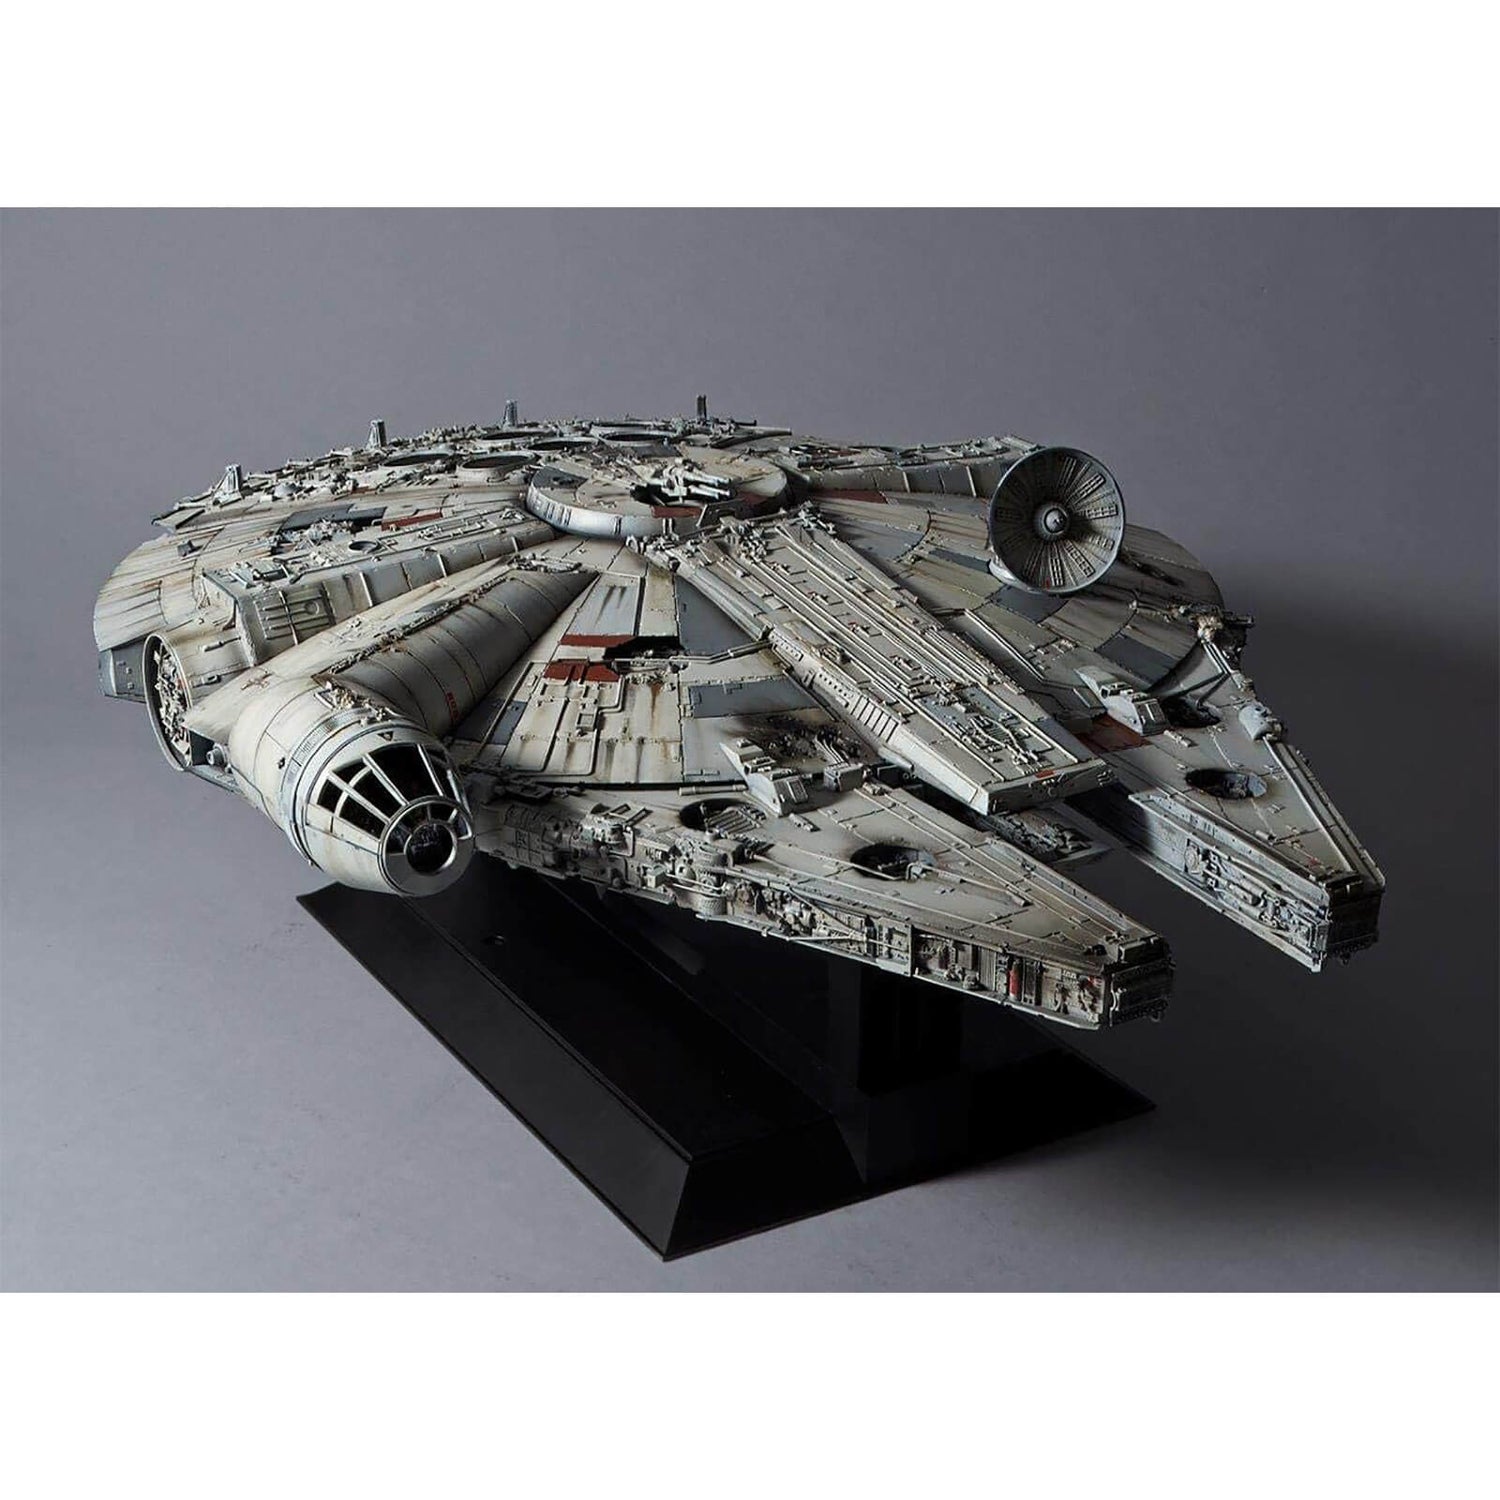 Star Wars Perfect Grade Millennium Falcon 1/72 Scale Plastic Model Kit